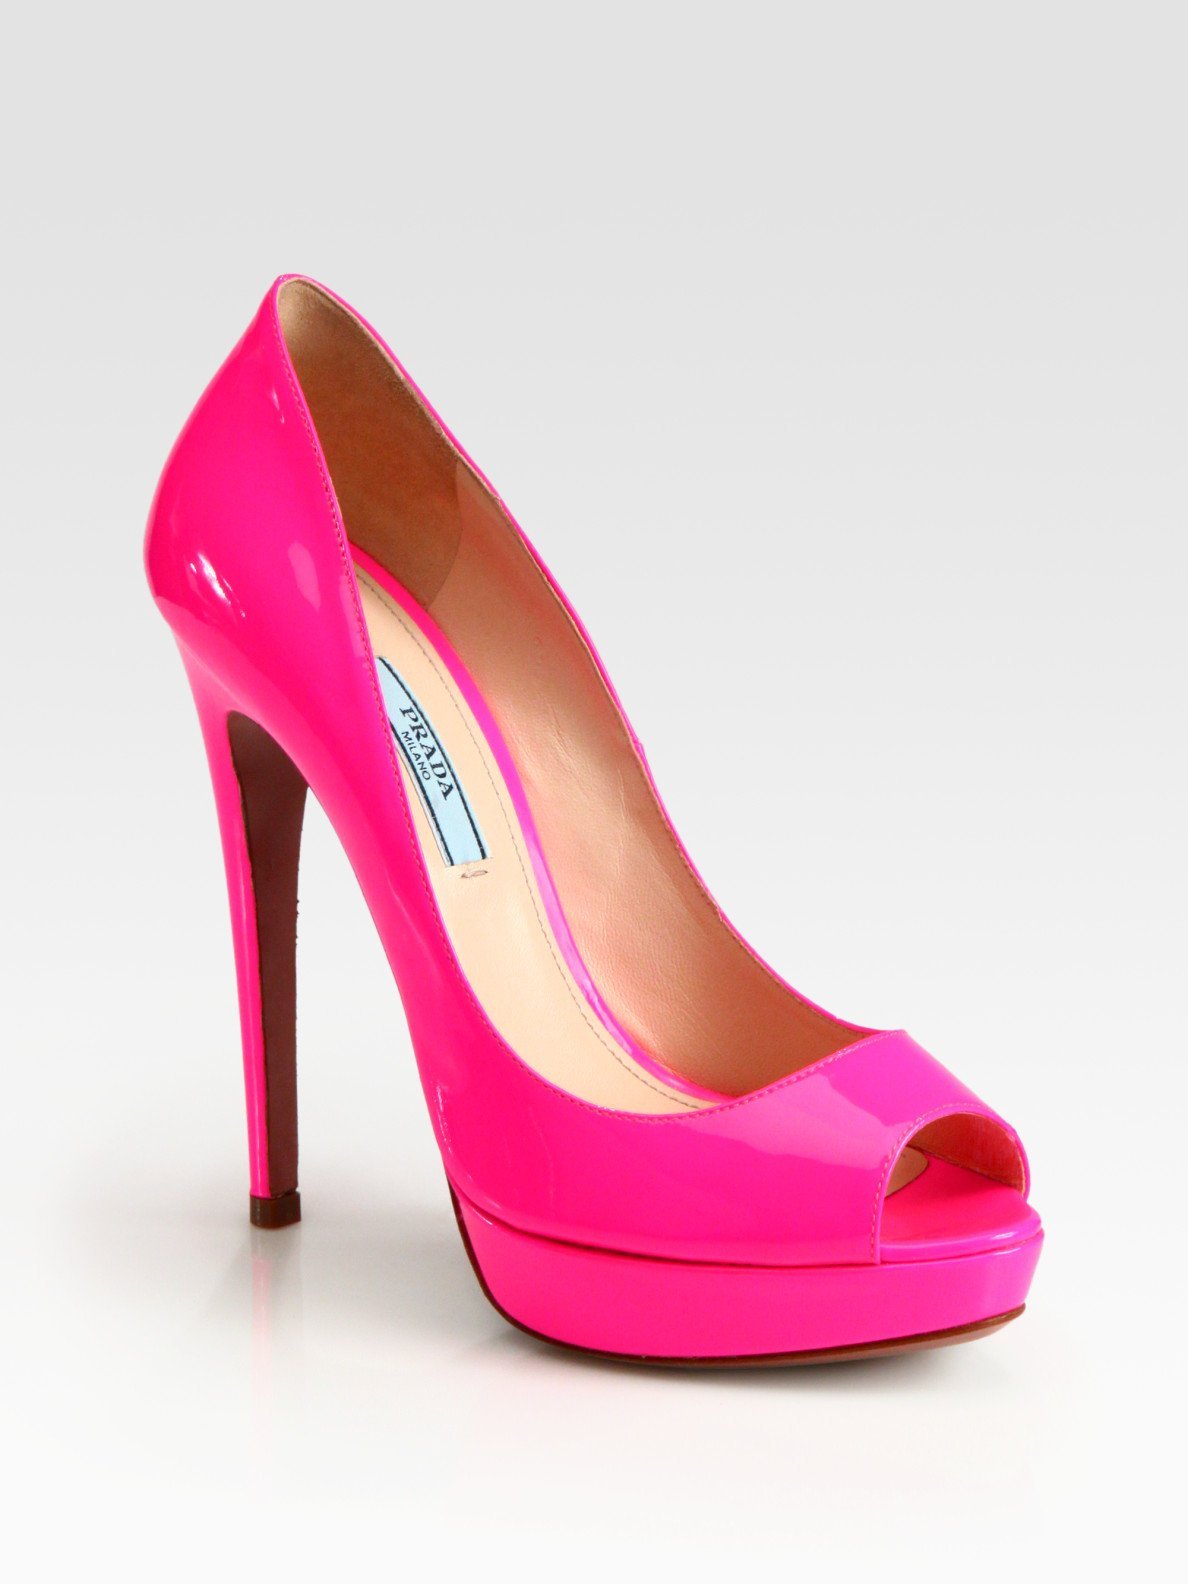 Розовые туфли есть. Peep Toe туфли Prada. Pink Heels Prada. Prada Pink Shoes. Туфли розовые.